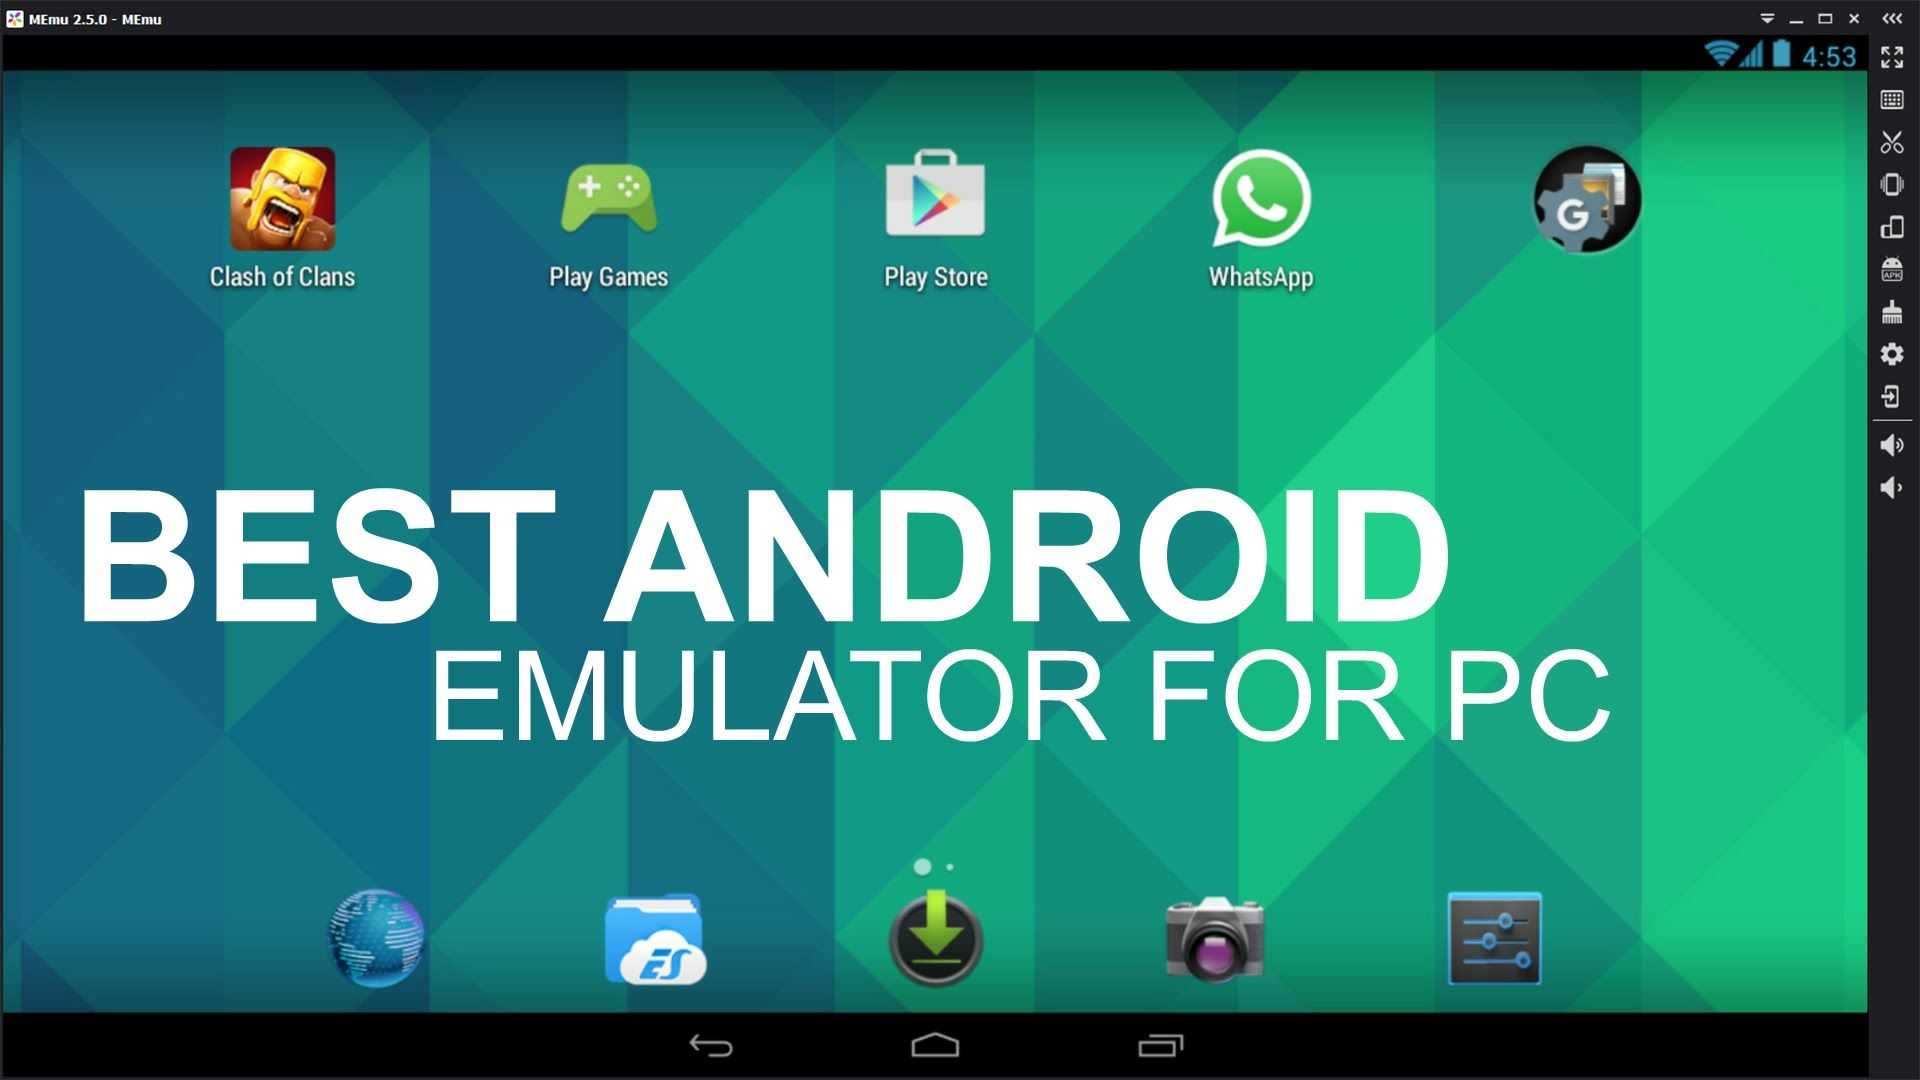 Самые лучшие эмуляторы андроид на компьютер. список лучших эмуляторов android для pc. какой эмулятор андроид для windows лучший?